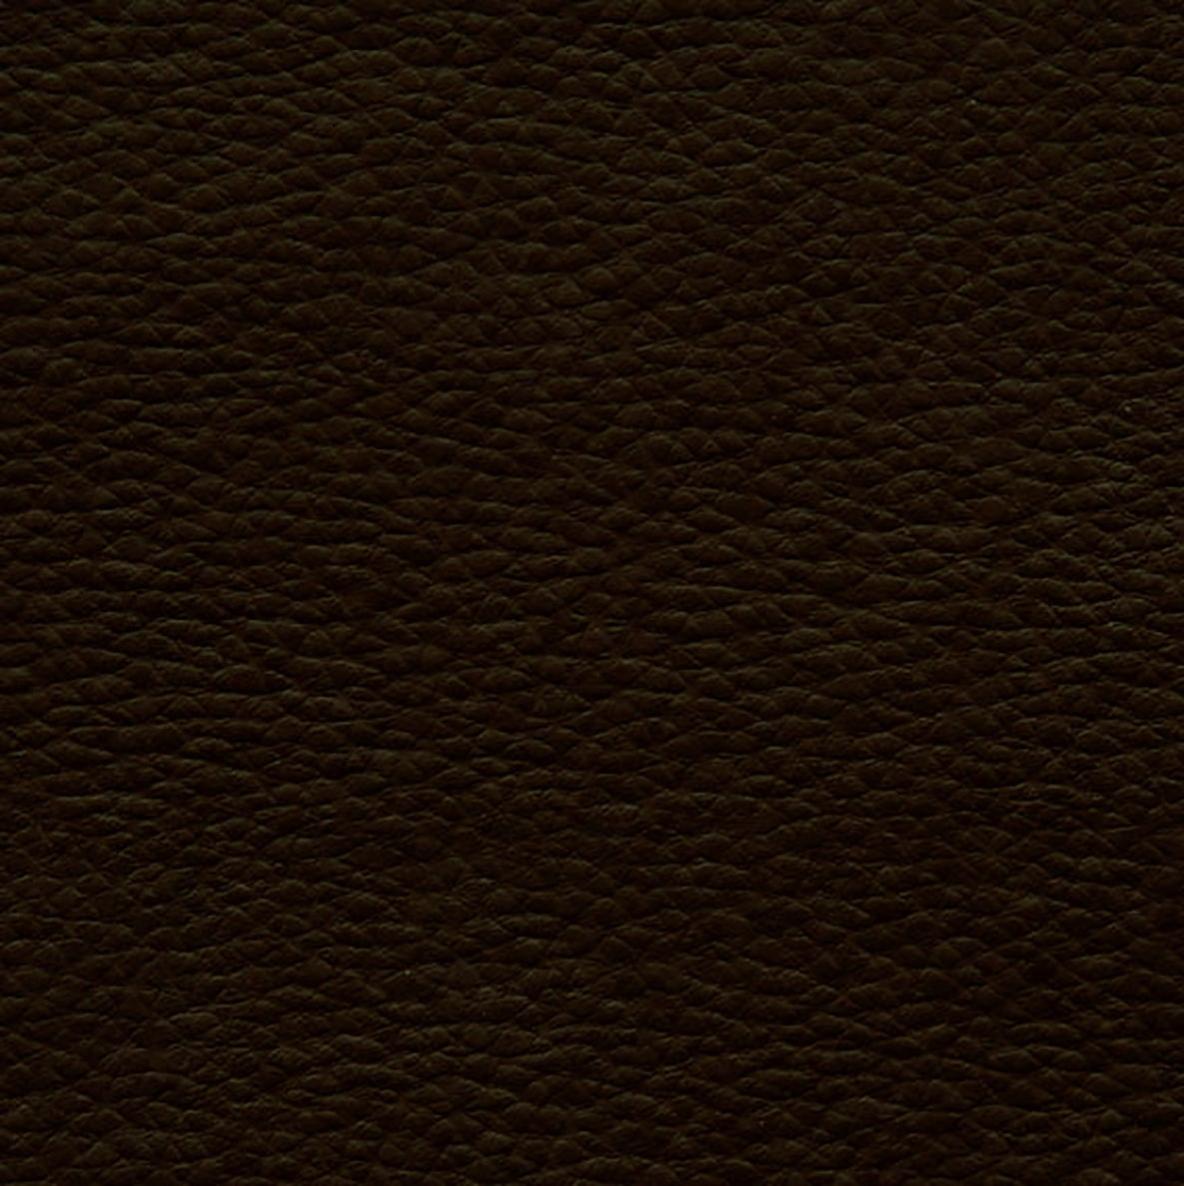 Tela al corte tapicería imitación piel crama chocolate ancho 140 cm